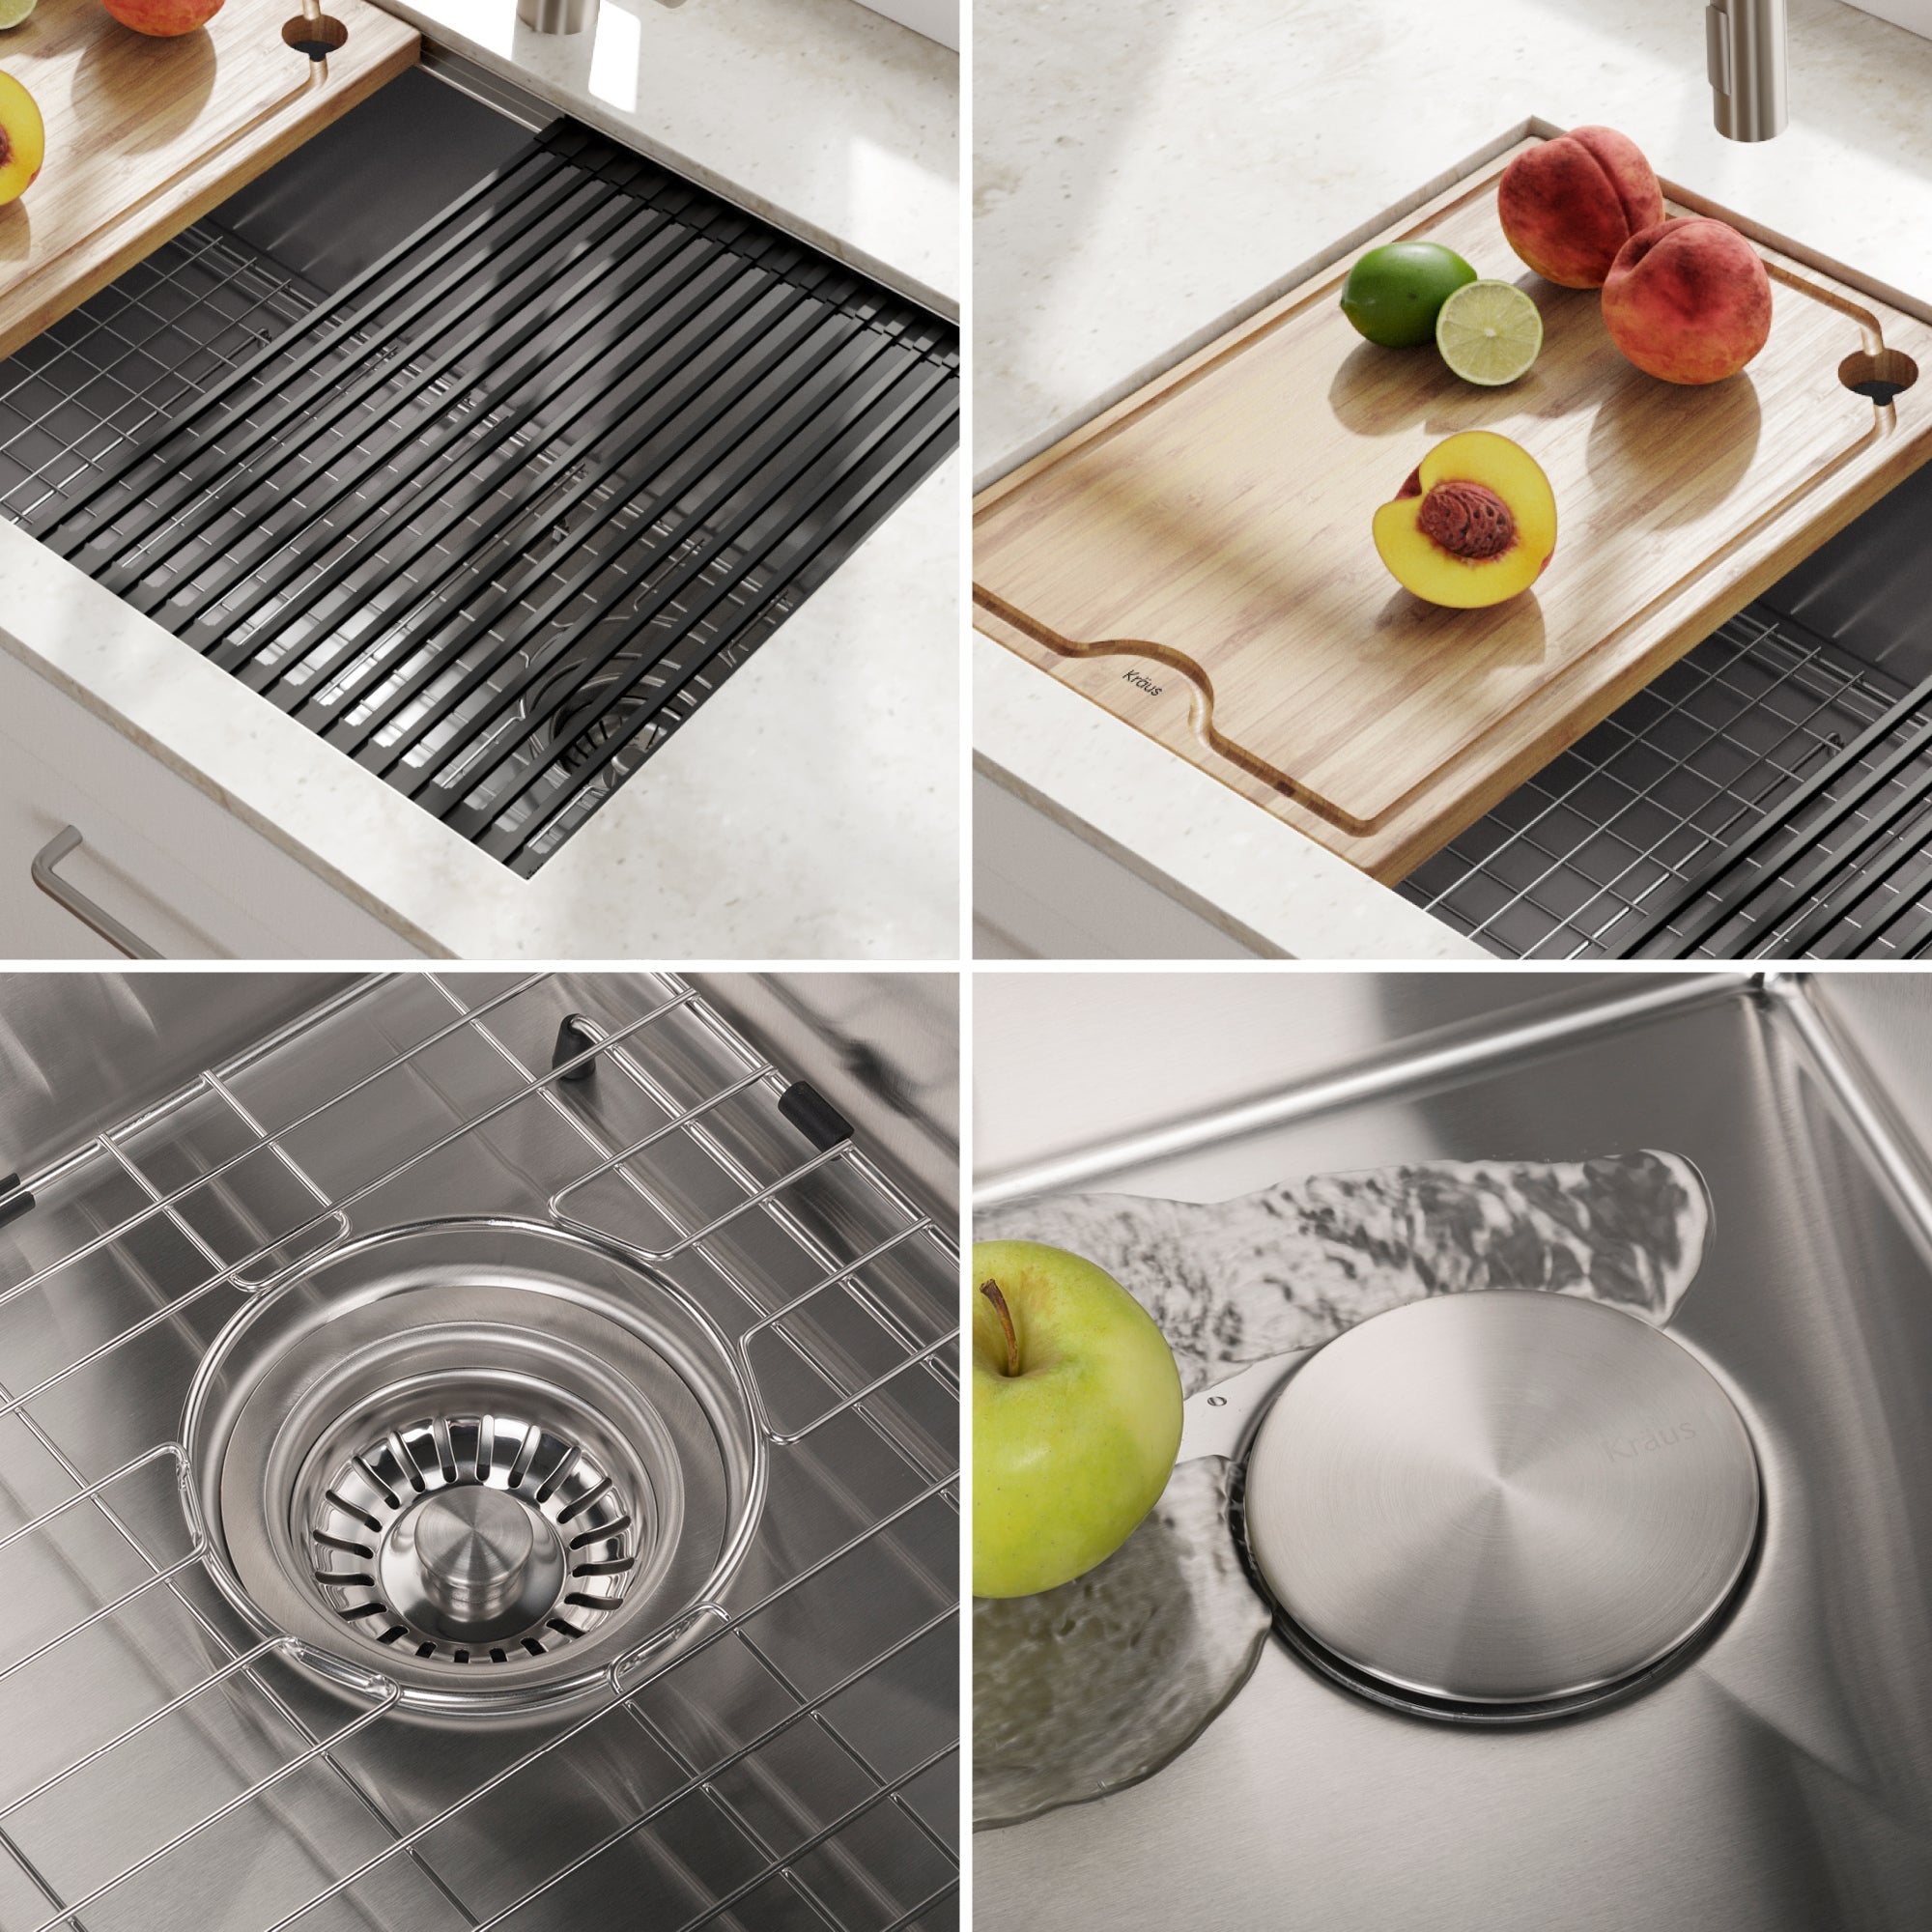 Kraus 30-Inch Undermount Single Bowl Stainless Steel Kitchen Sink